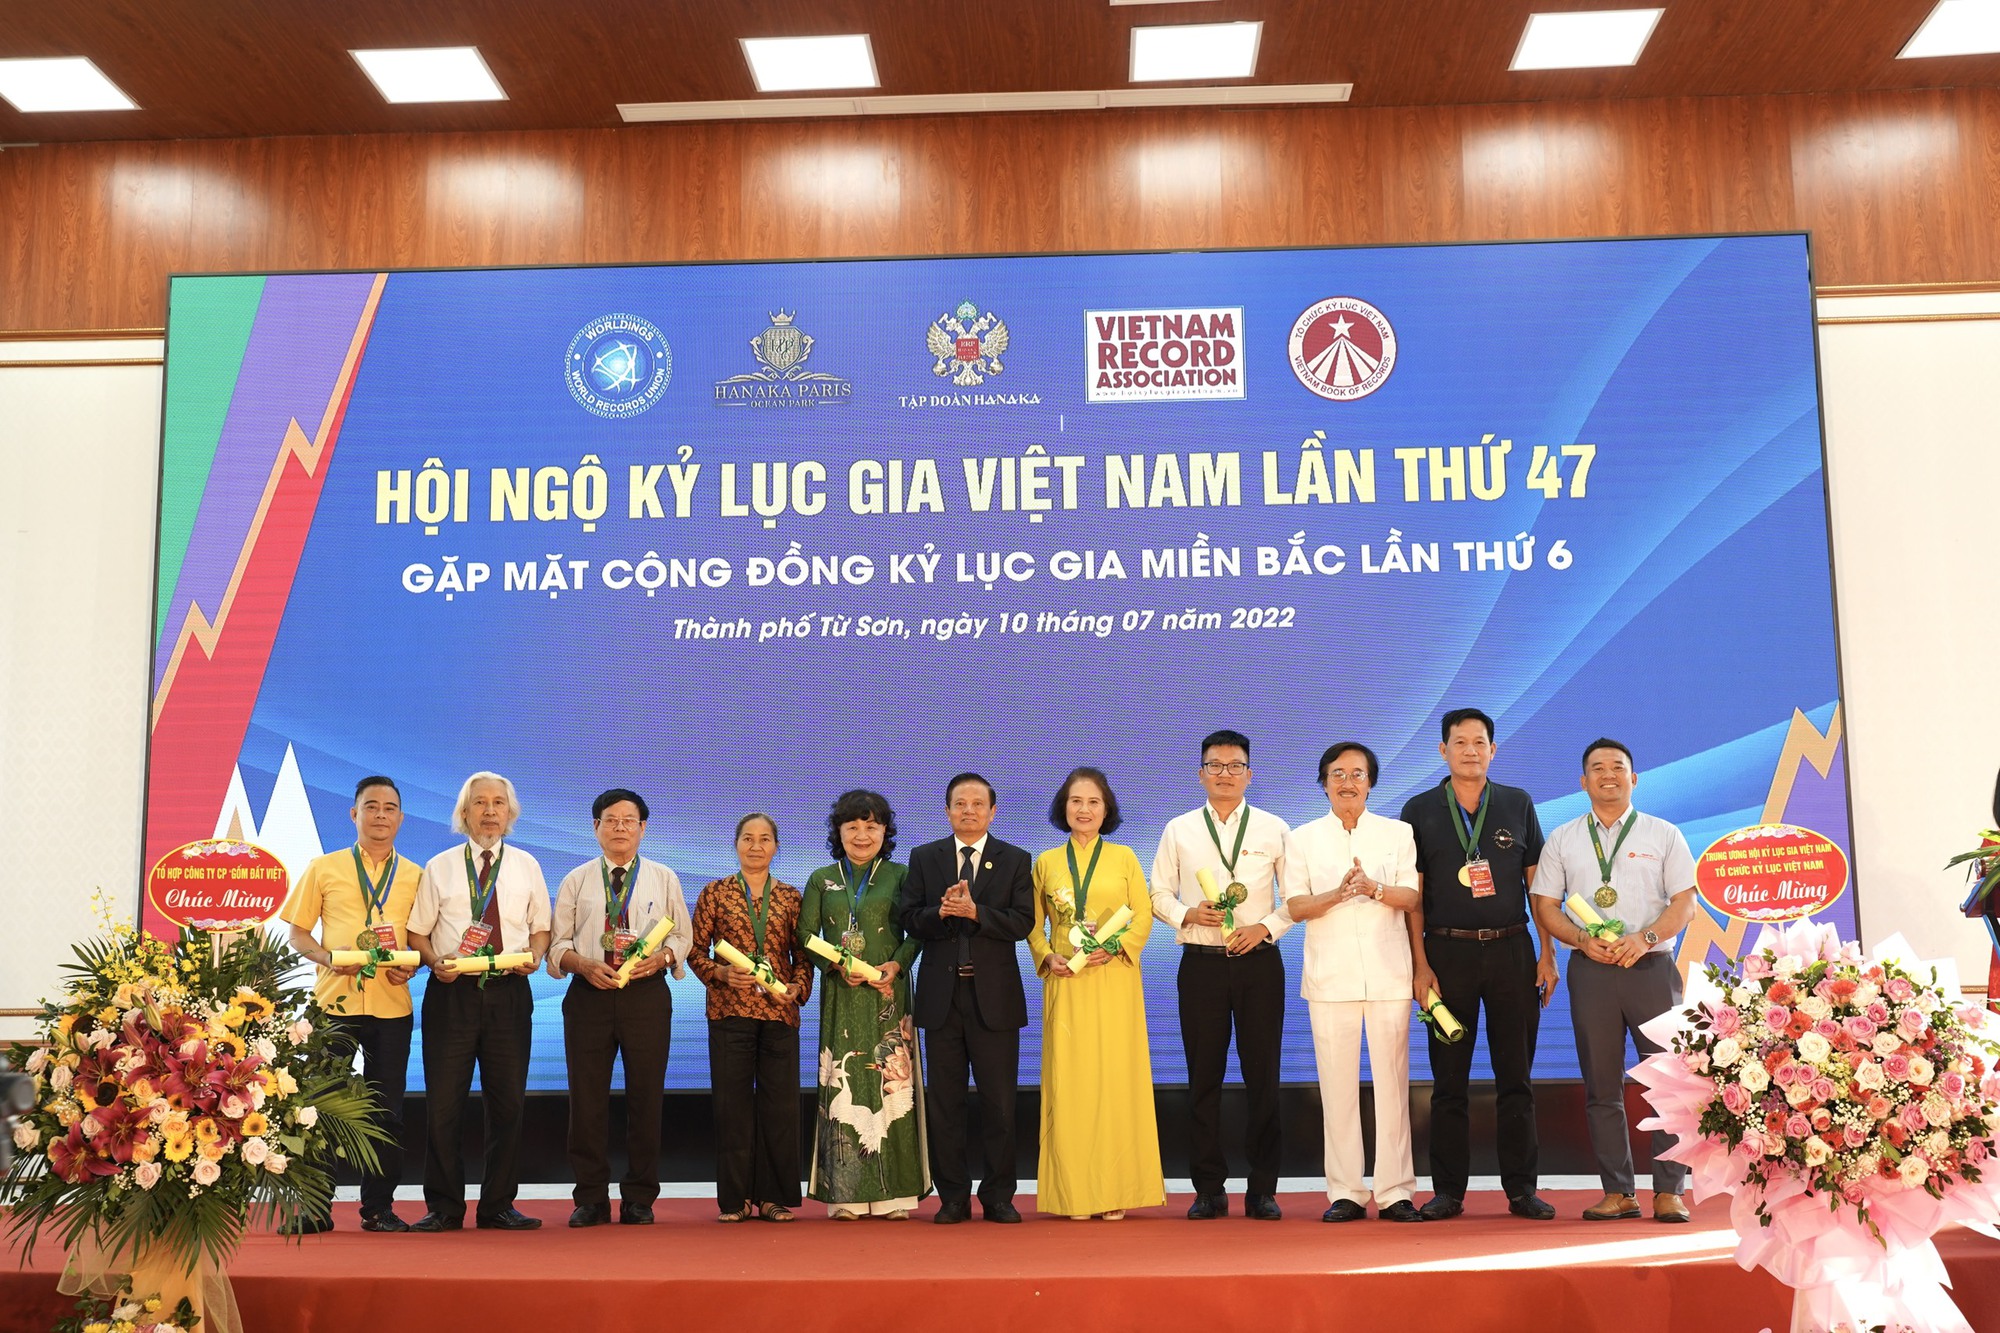 Kỷ lục gia Việt Nam: Ghi nhận thêm 6 kỷ lục mới - Ảnh 2.